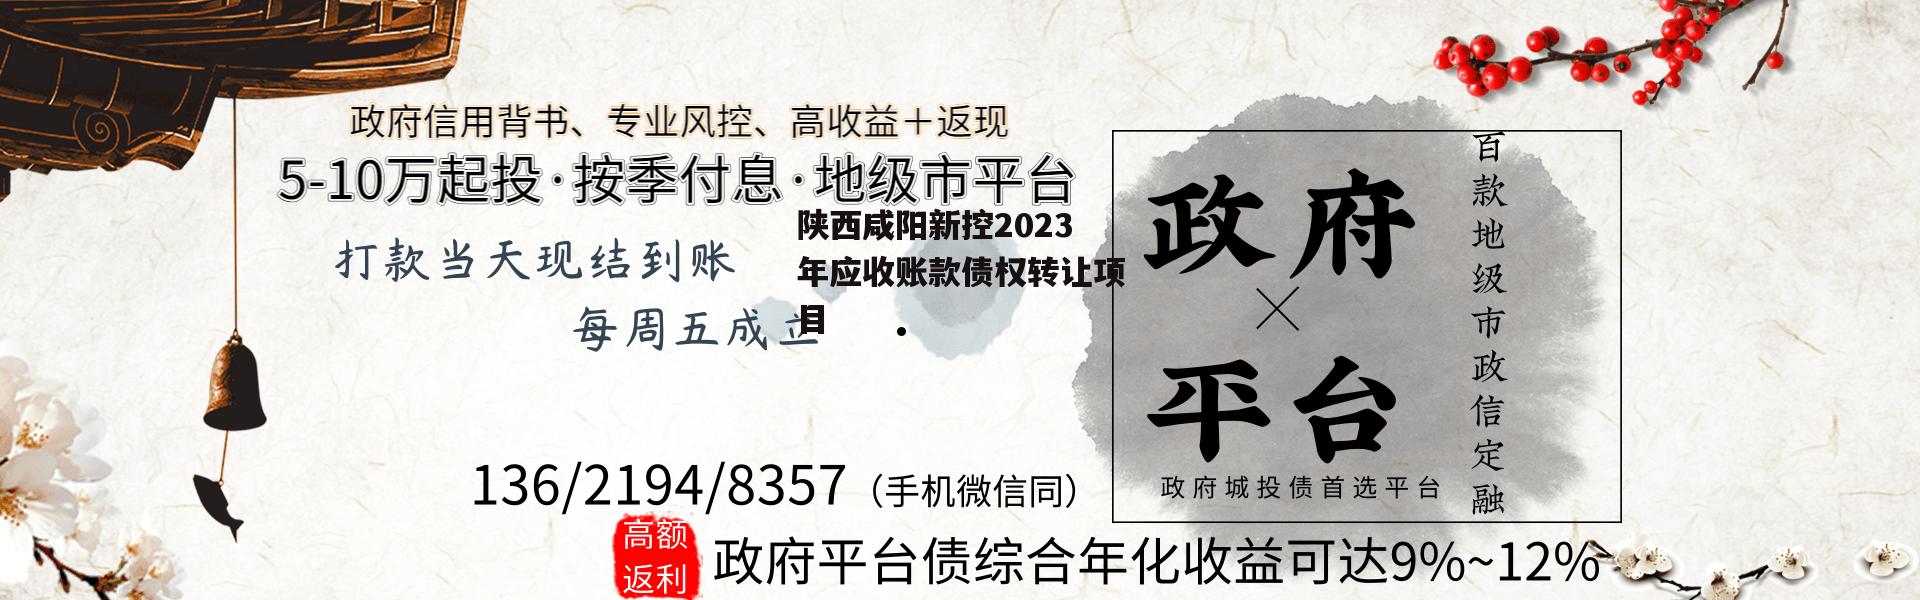 陕西咸阳新控2023年应收账款债权转让项目